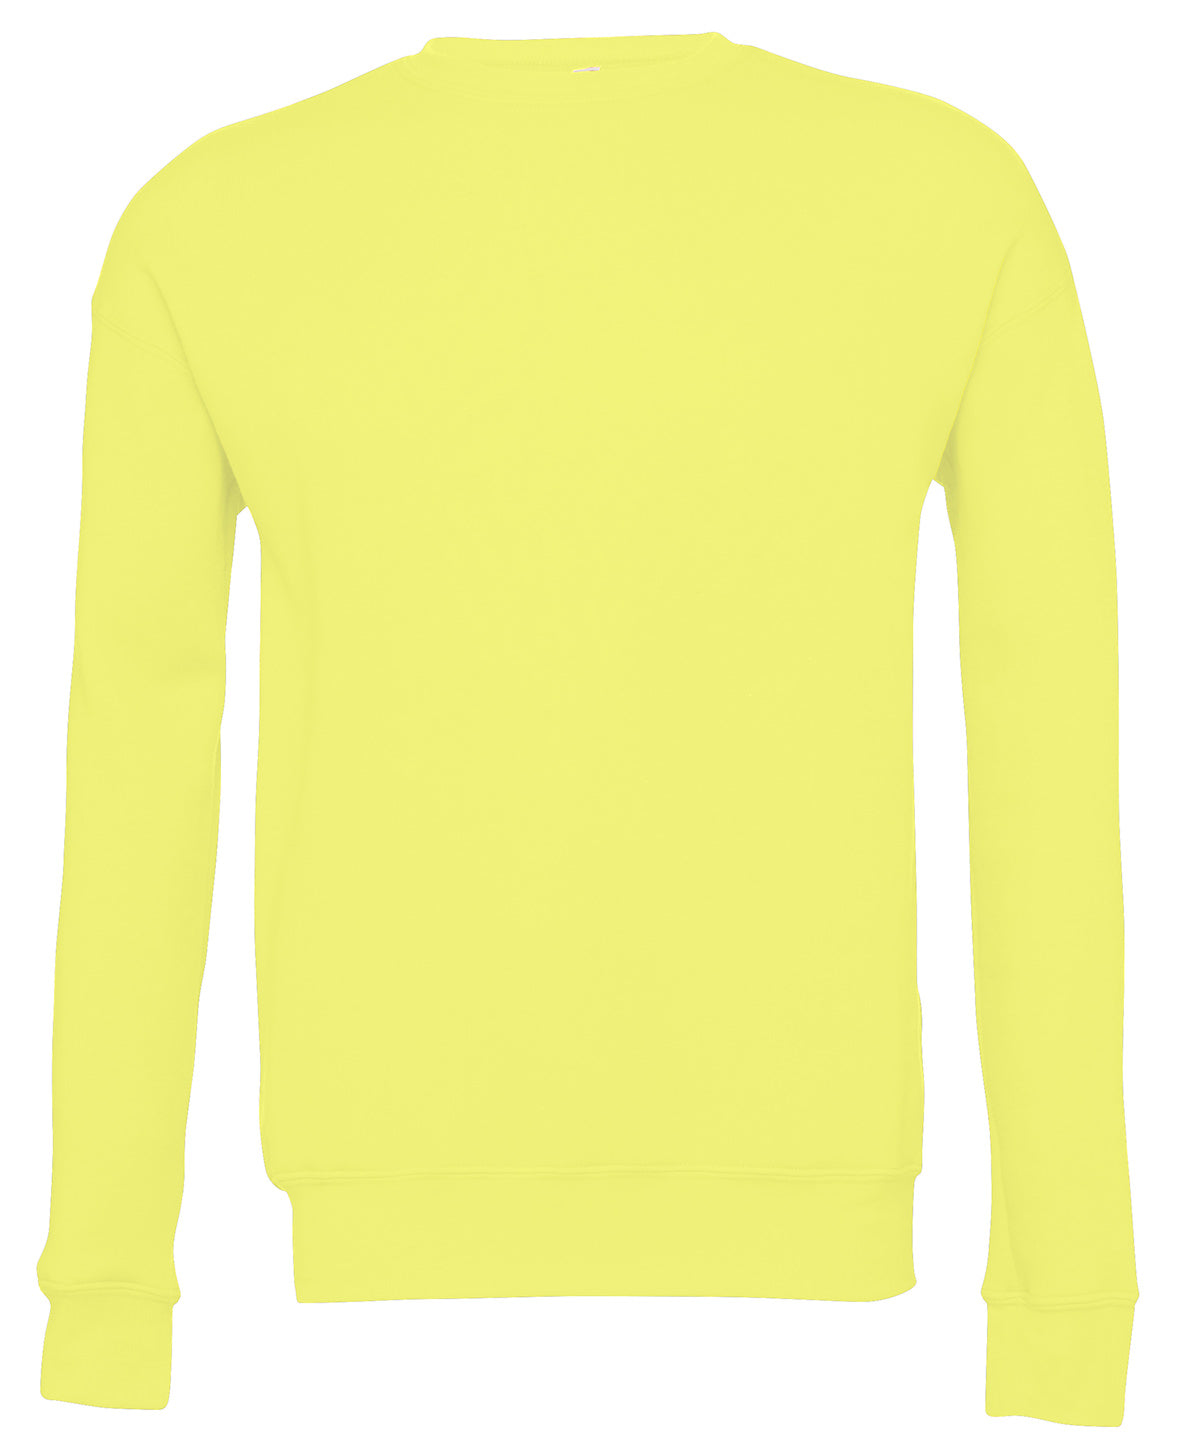 Personalised Sweatshirts - Navy Bella Canvas Unisex drop shoulder fleece